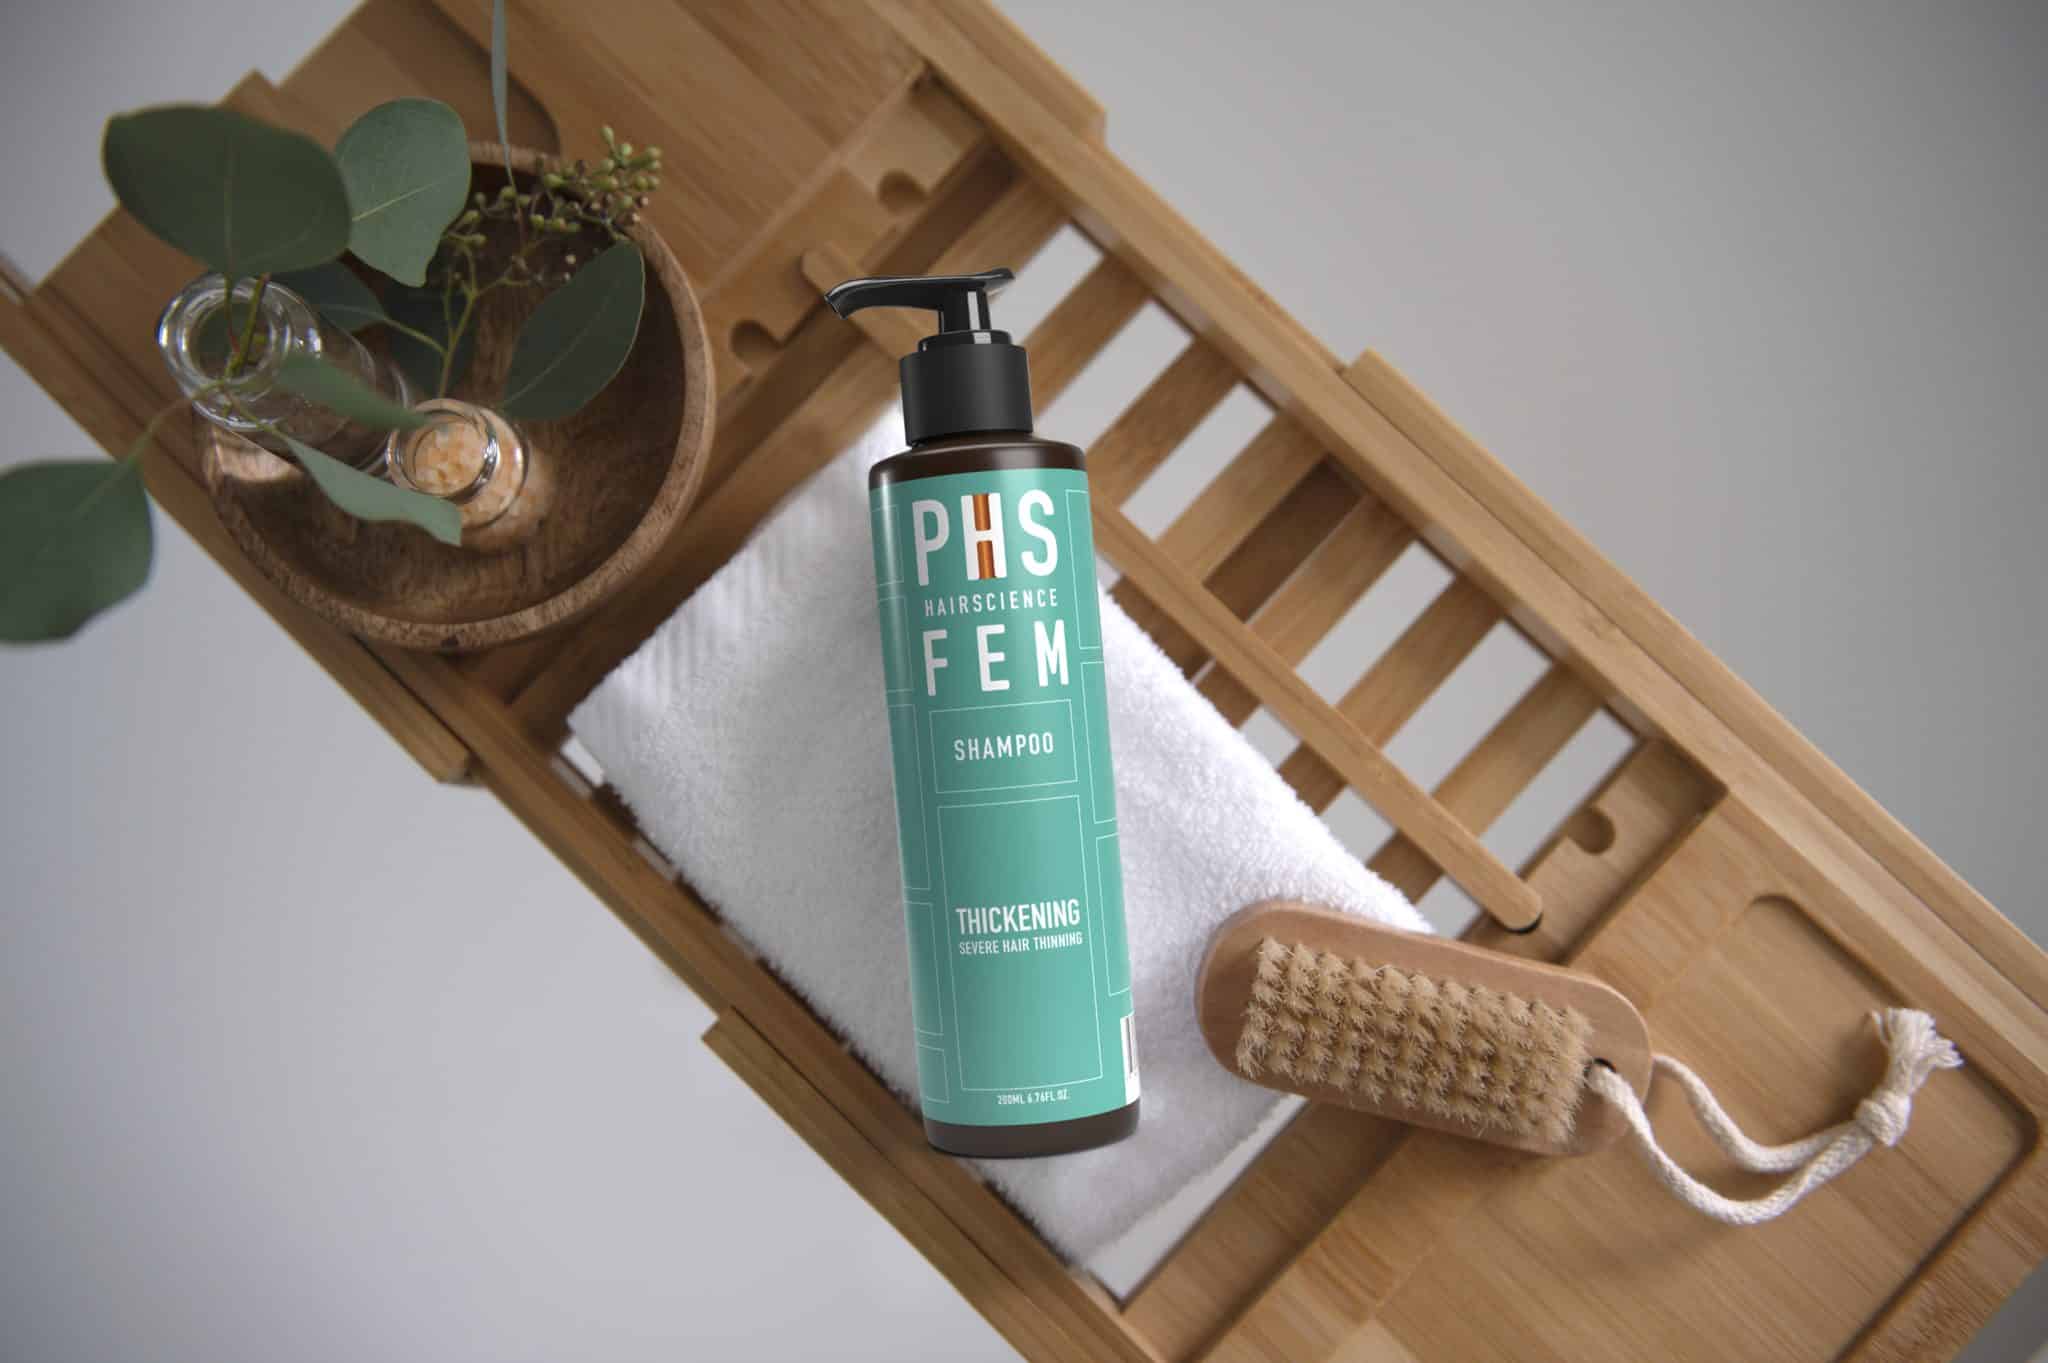 phs-hairscience-fem-fortify-shampoo